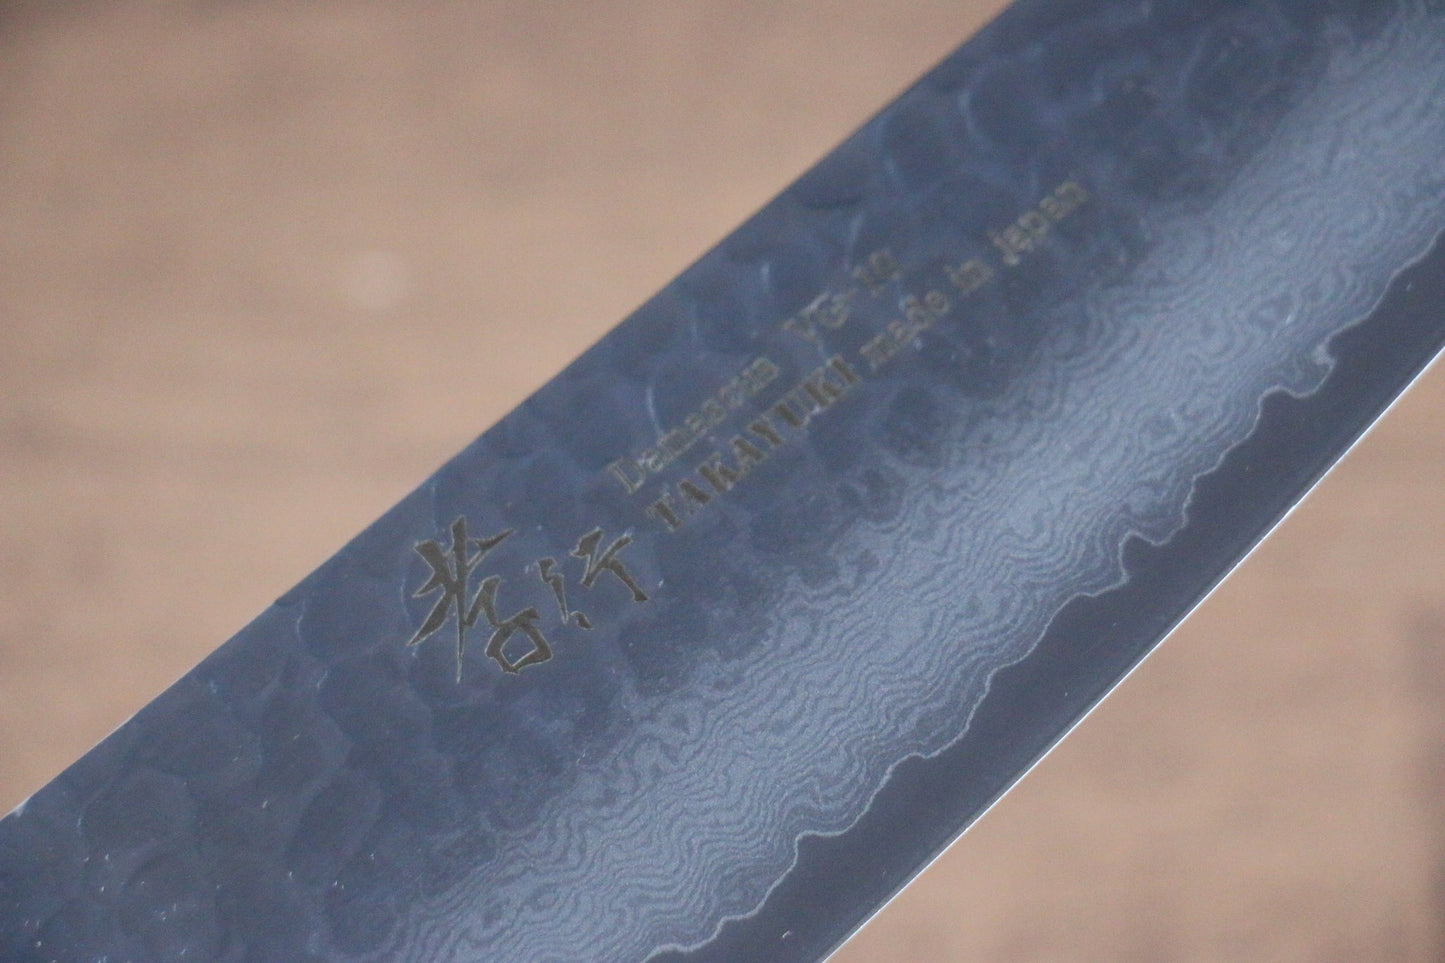 Marke Sakai Takayuki Sieben Farben VG10 33 Schichten Santoku-Mehrzweckmesser Japanisches Messer 180 mm Griff aus ABS-Kunststoff (rote Schildkrötenpanzerfarbe)